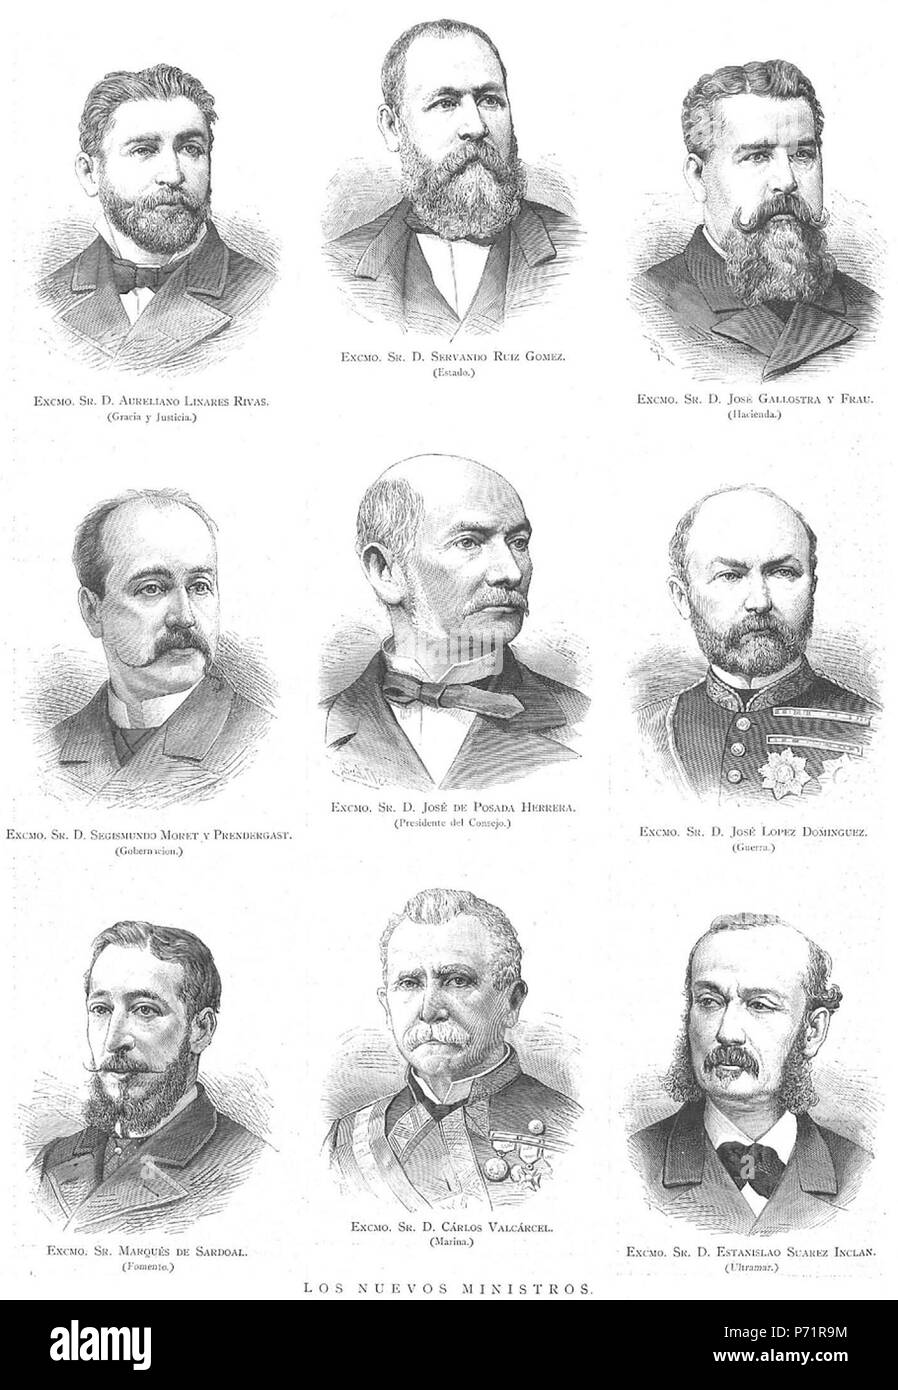 44 Los nuevos ministros, en La Ilustración Española y Americana, 1883 Stockfoto